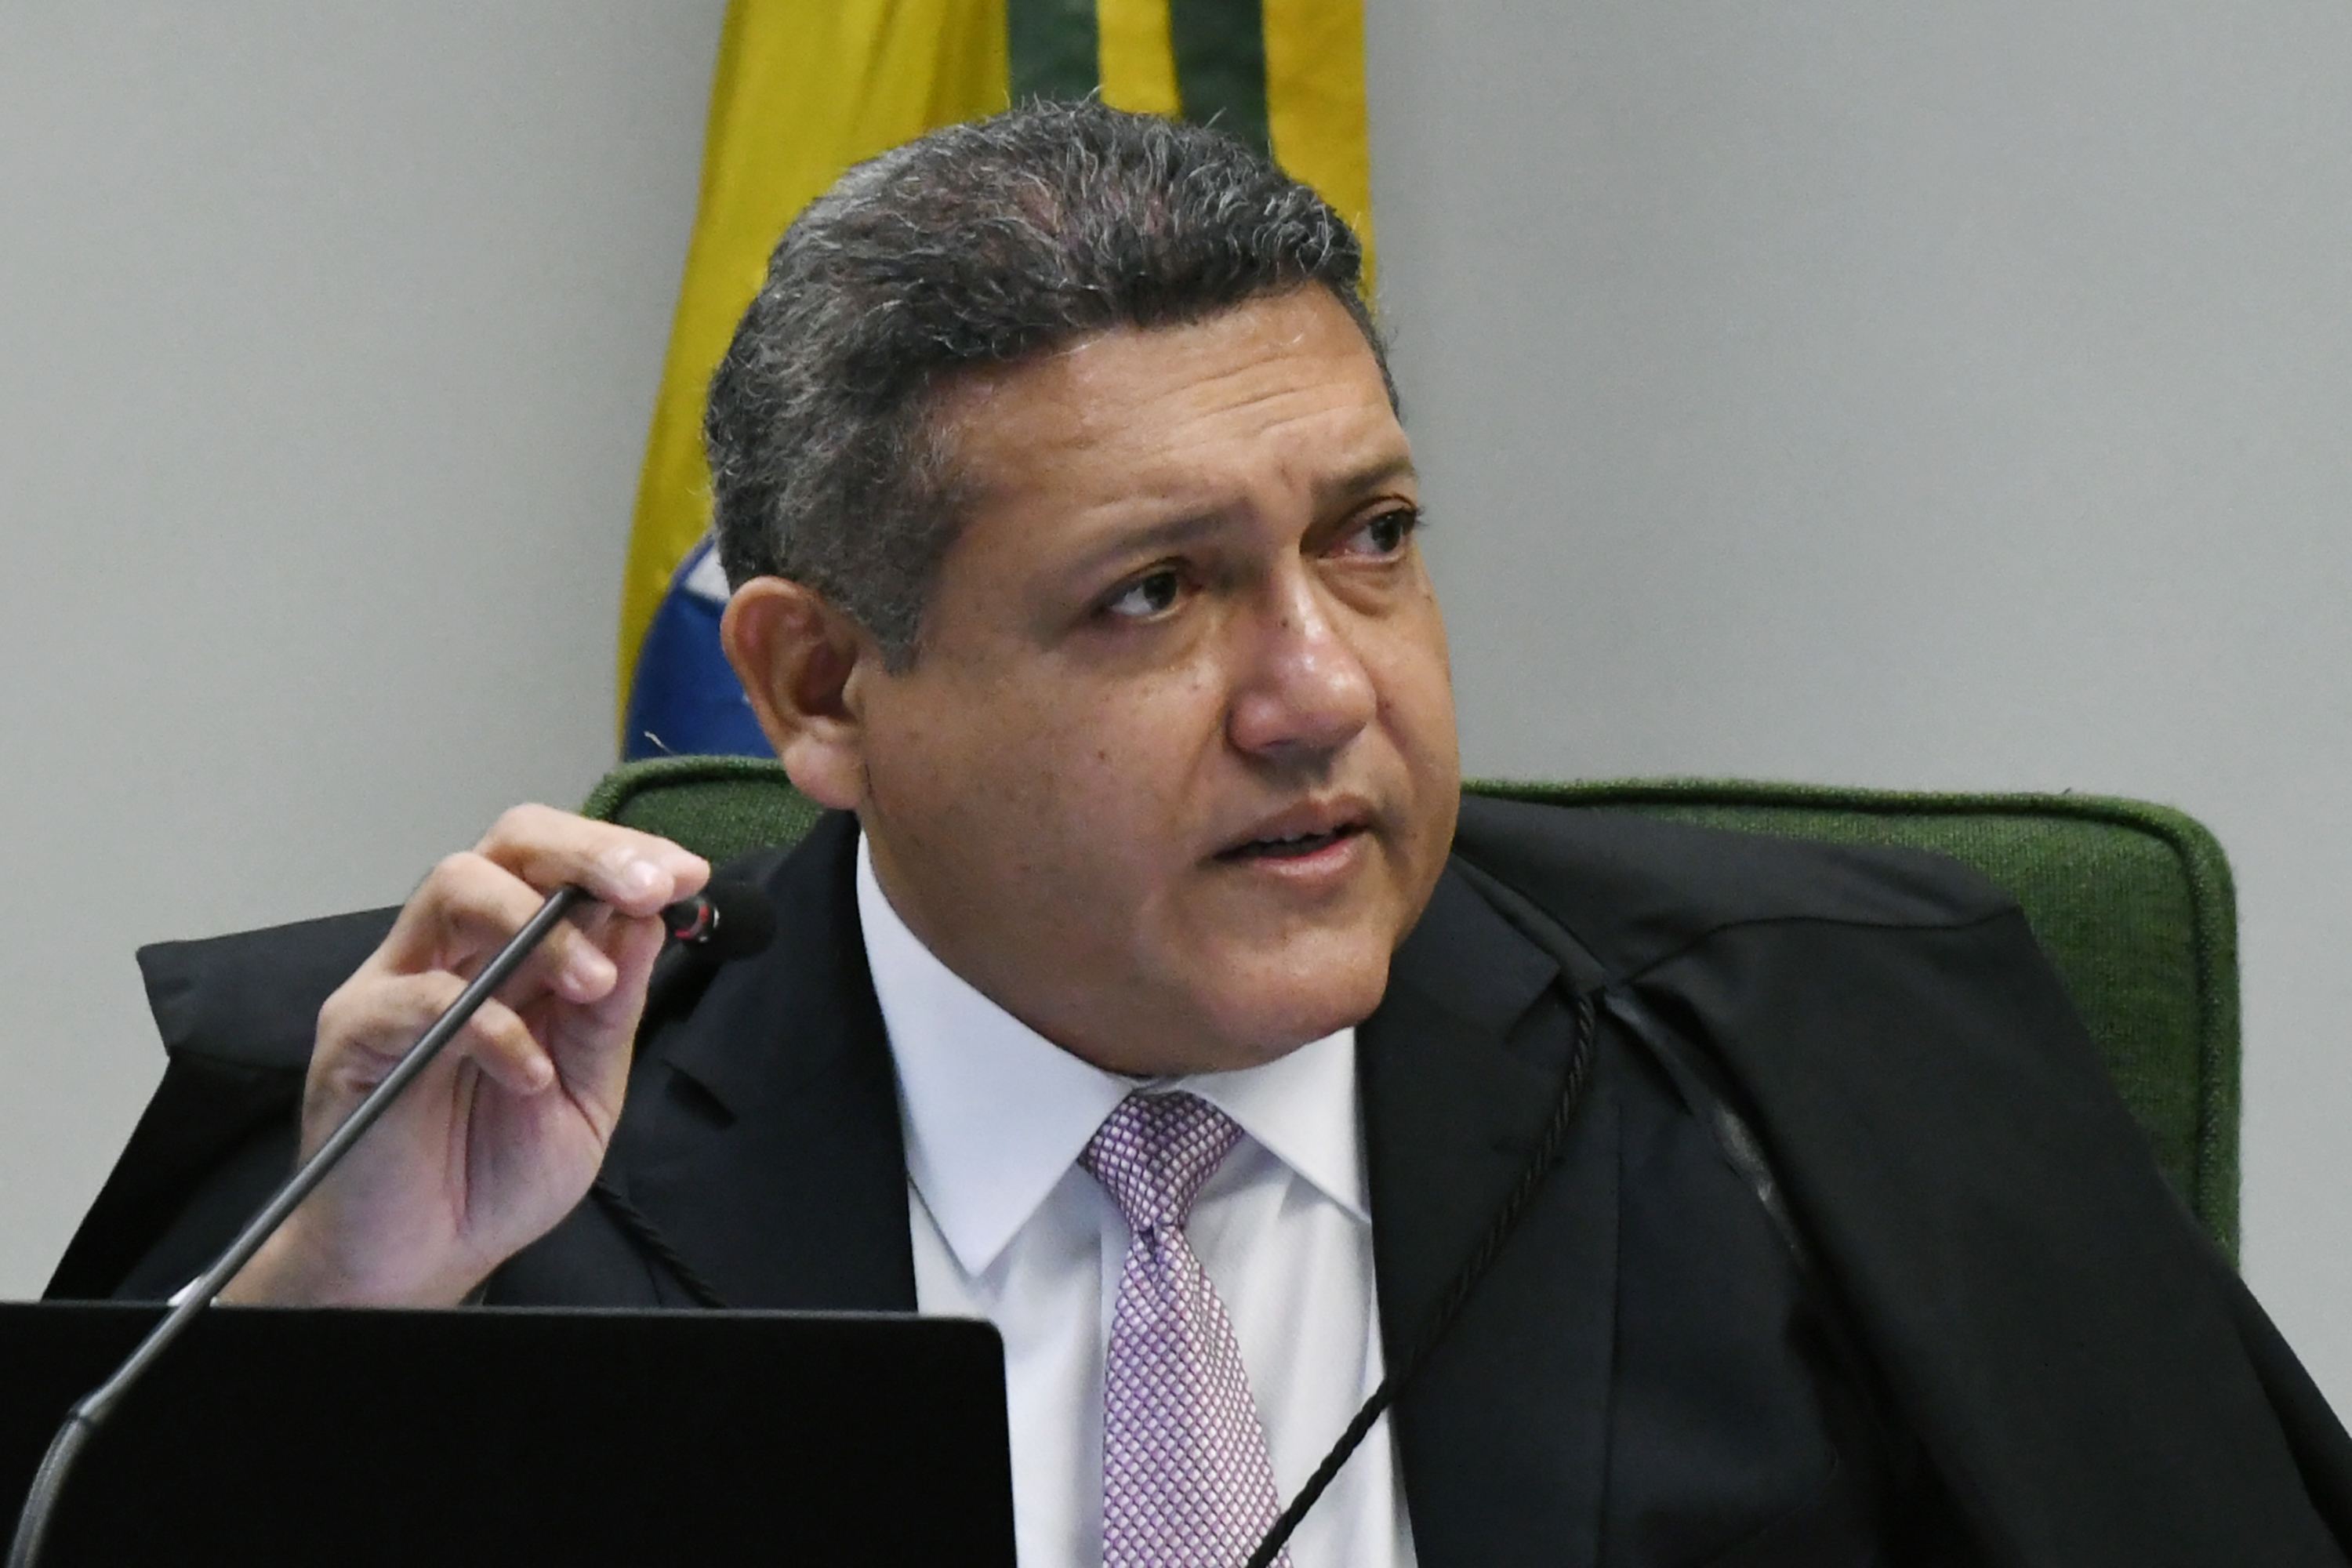 Ministro-Relator Nunes Marques, da ADI 7069,  deve pedir pauta nos próximos dias, pois ele adotou o Rito Abreviado